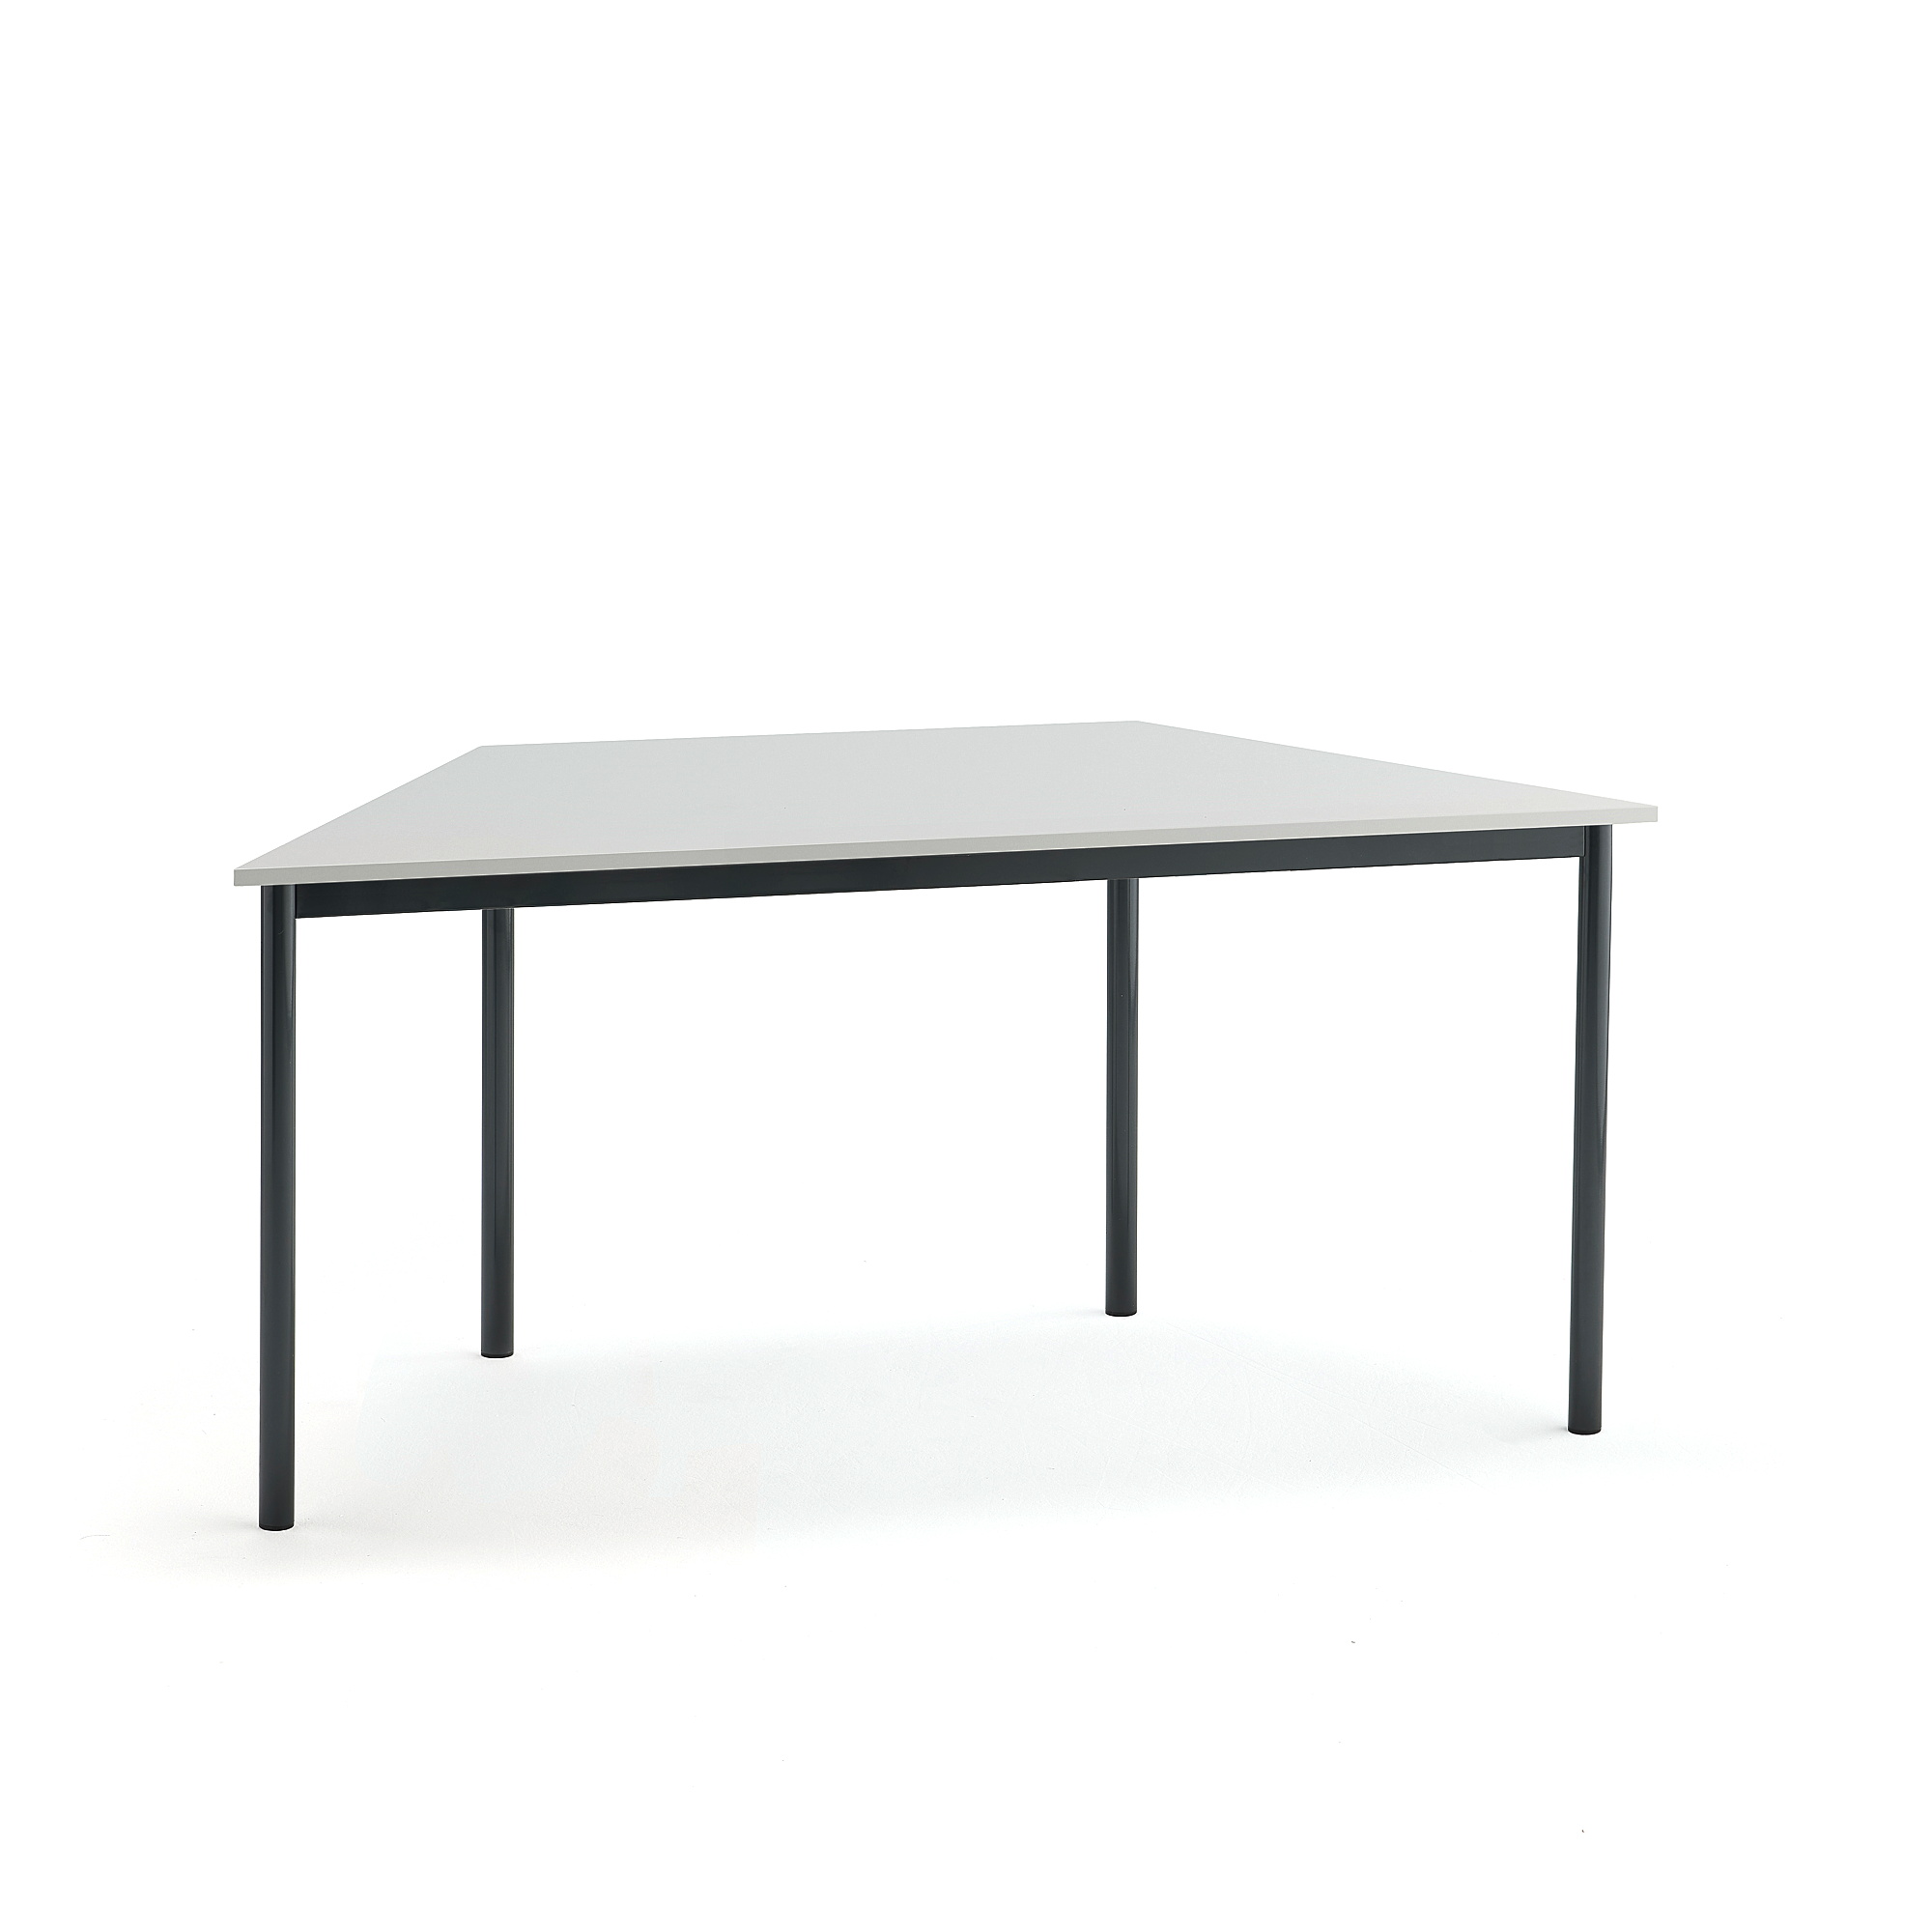 Stůl BORÅS TRAPETS, 1600x800x720 mm, antracitově šedé nohy, HPL deska, šedá